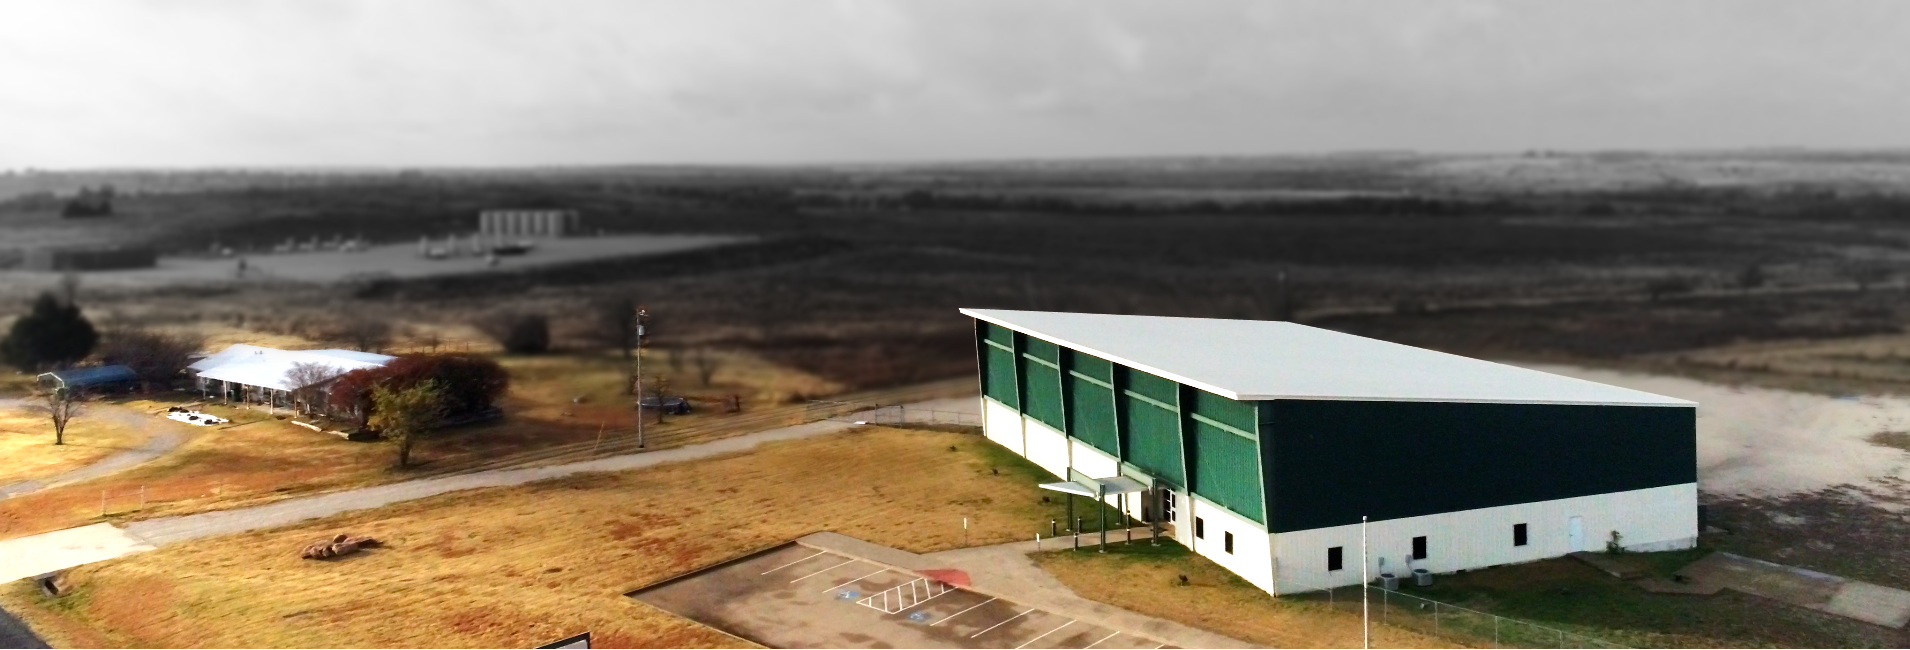 Bowie TX Economic Development Spec Building